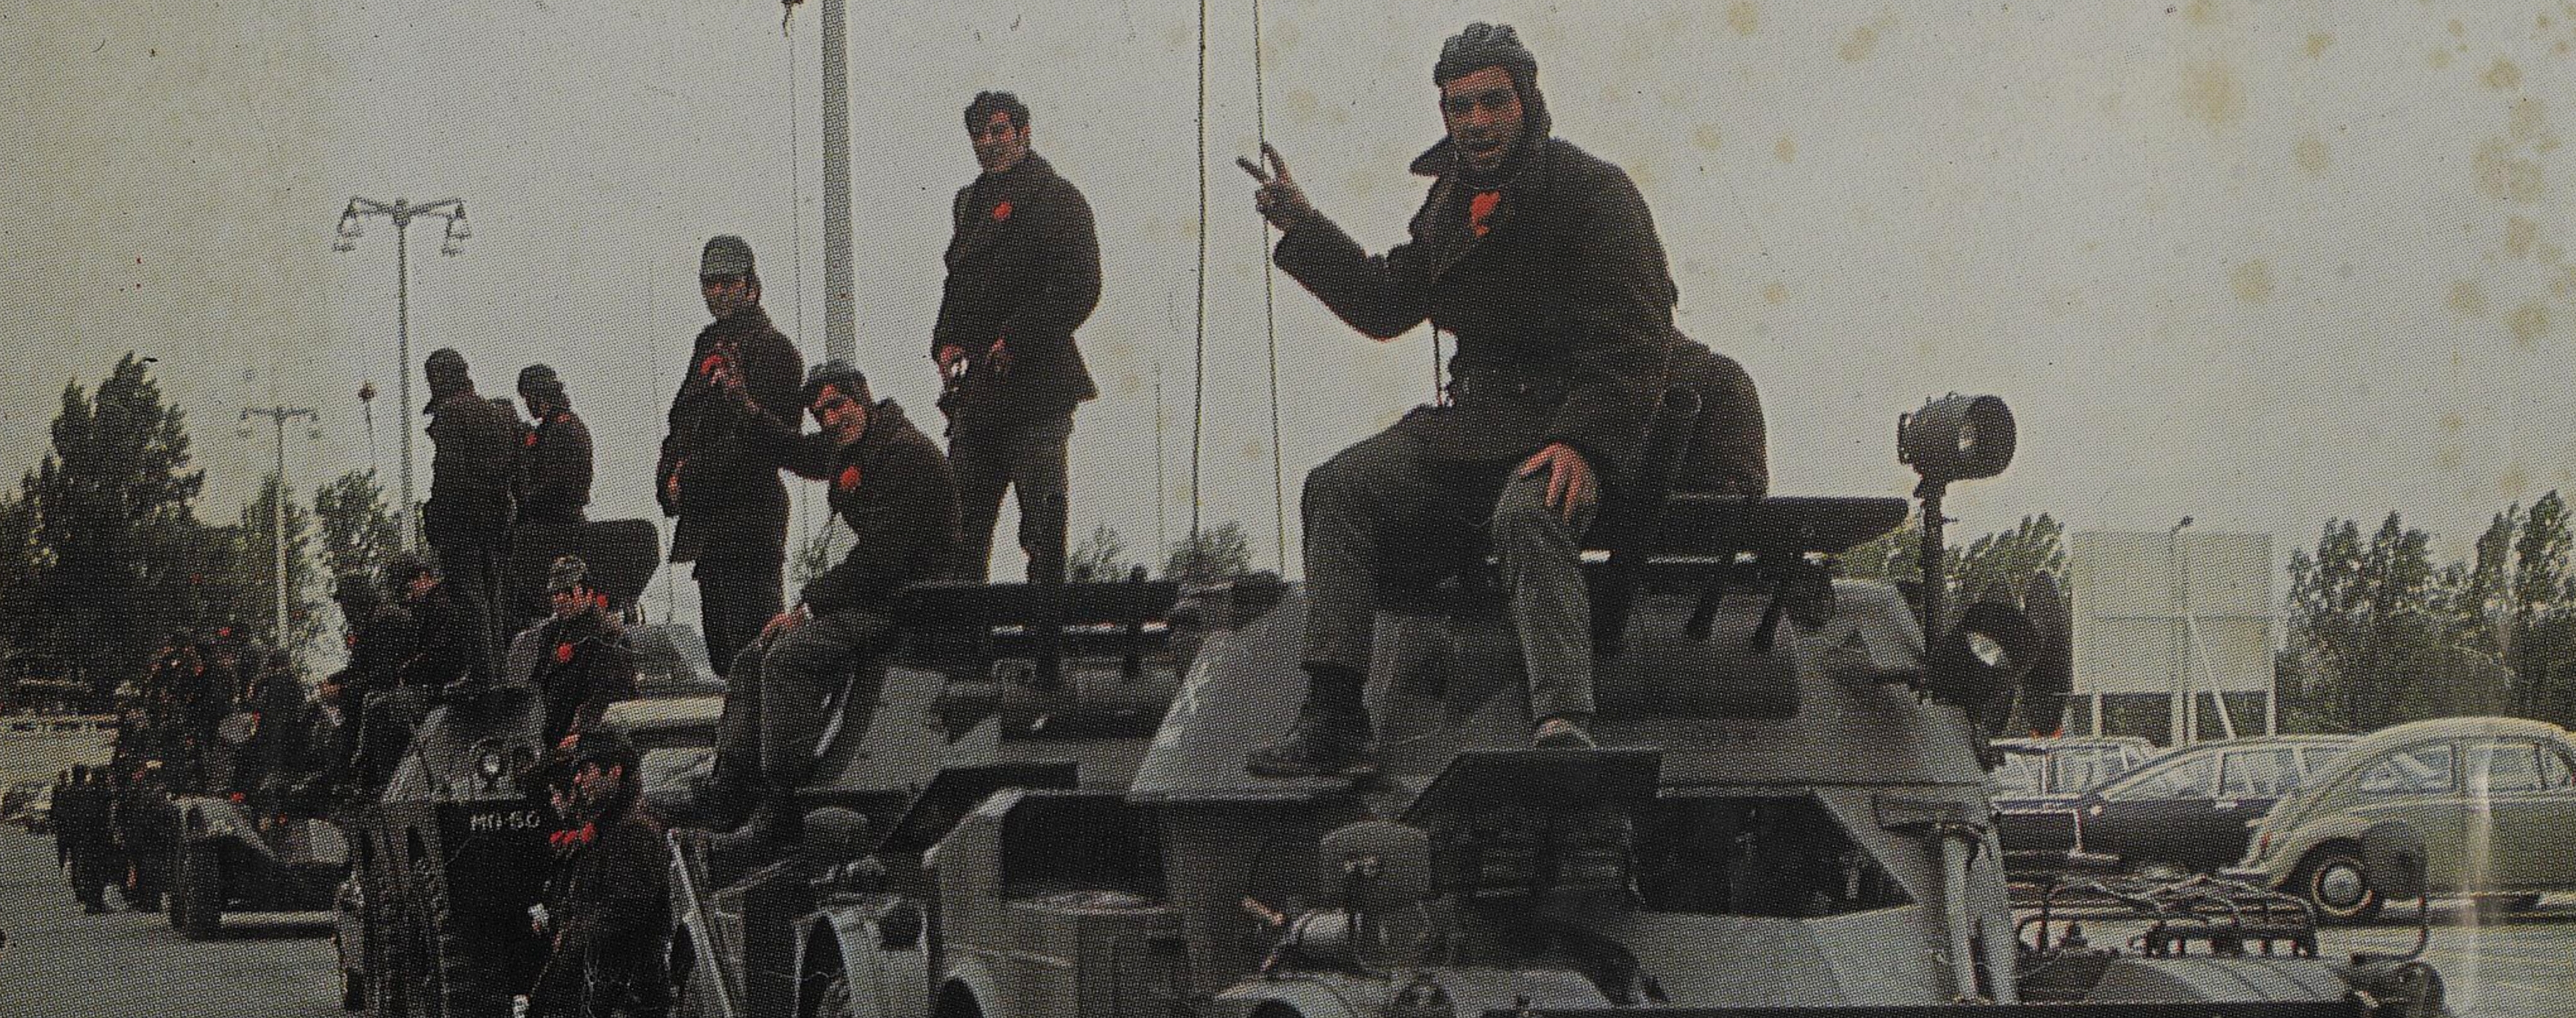 Portugal libertado, 25 Abril 1974